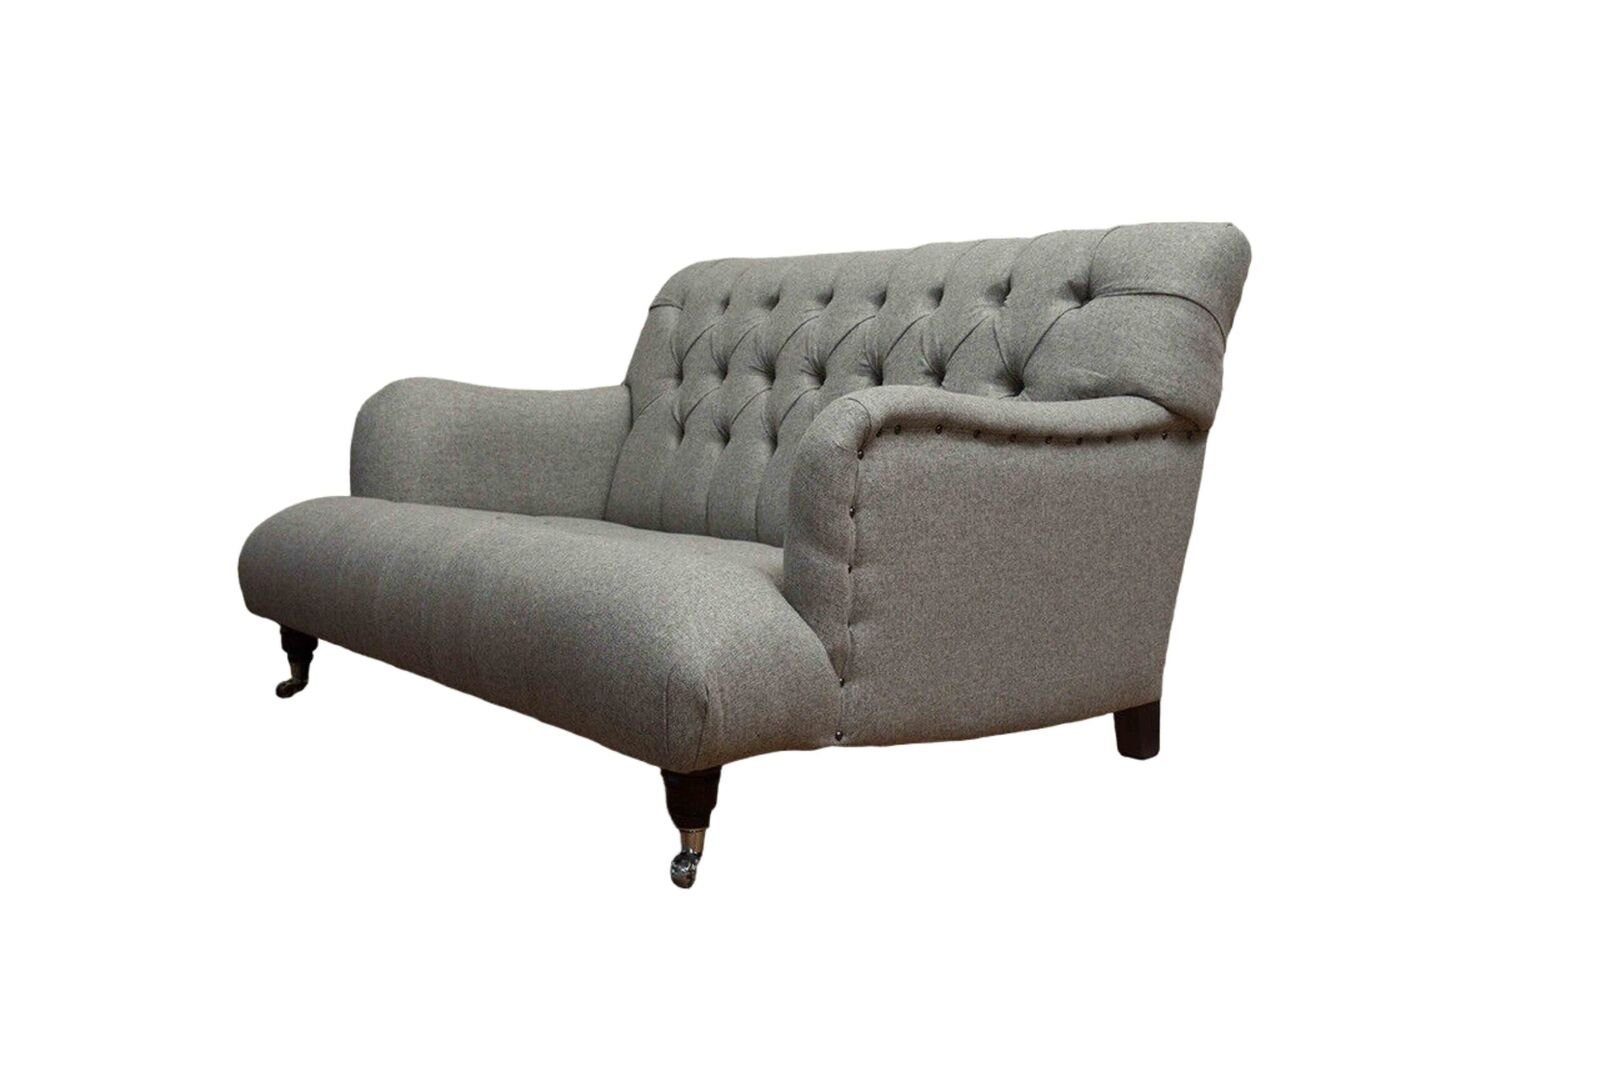 JVmoebel Made Chesterfield In Sofa Europe Dreisitzer Sofa Luxus Möbel Sitzer Blau Couchen, Design 3